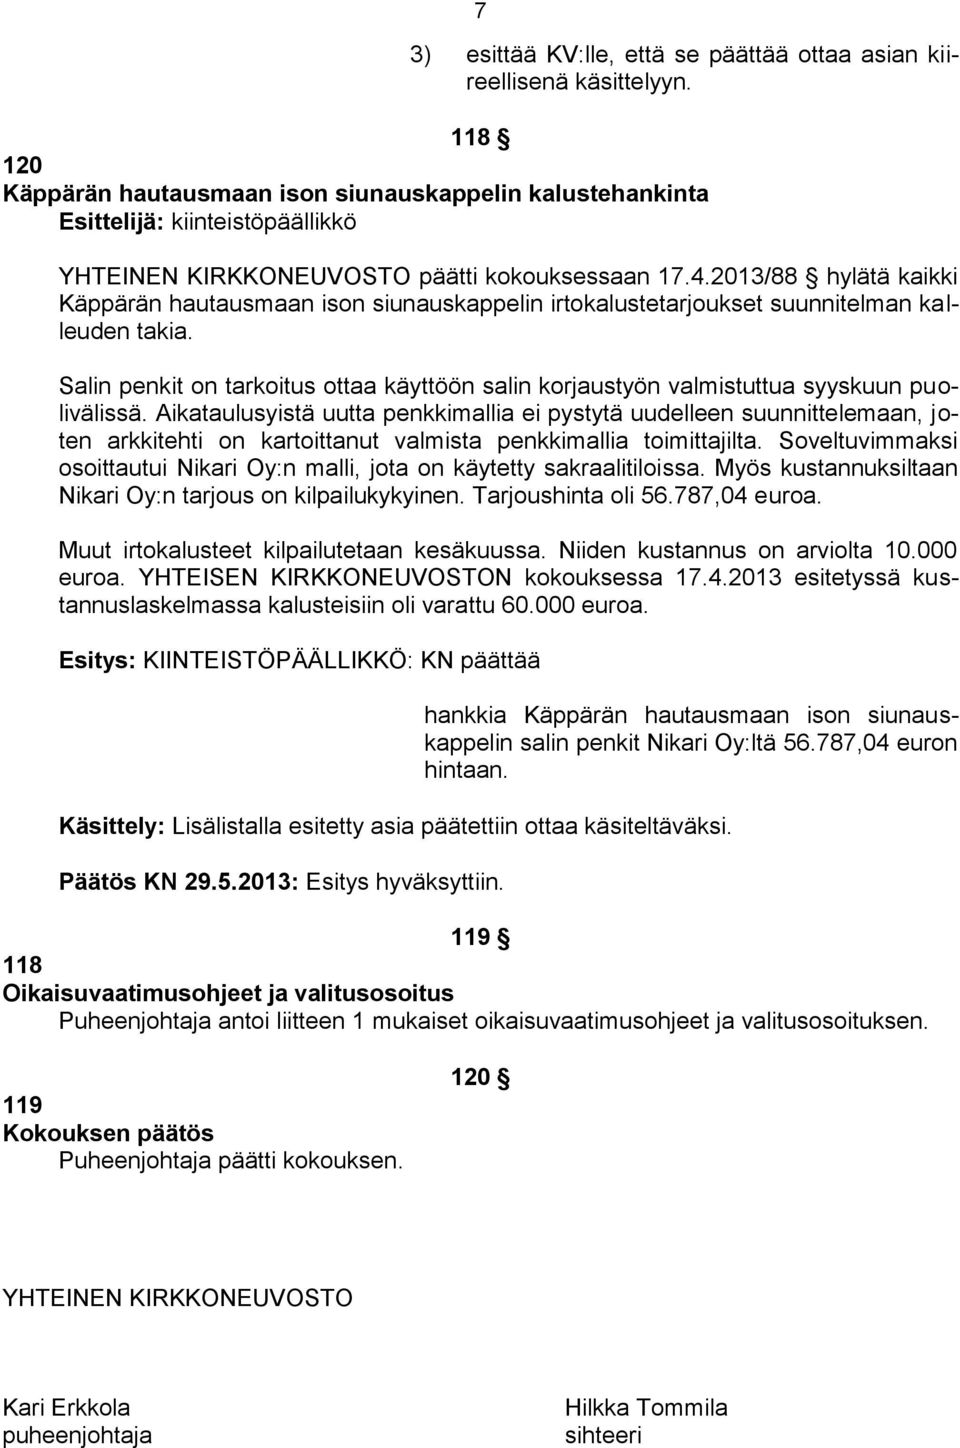 2013/88 hylätä kaikki Käppärän hautausmaan ison siunauskappelin irtokalustetarjoukset suunnitelman kalleuden takia.